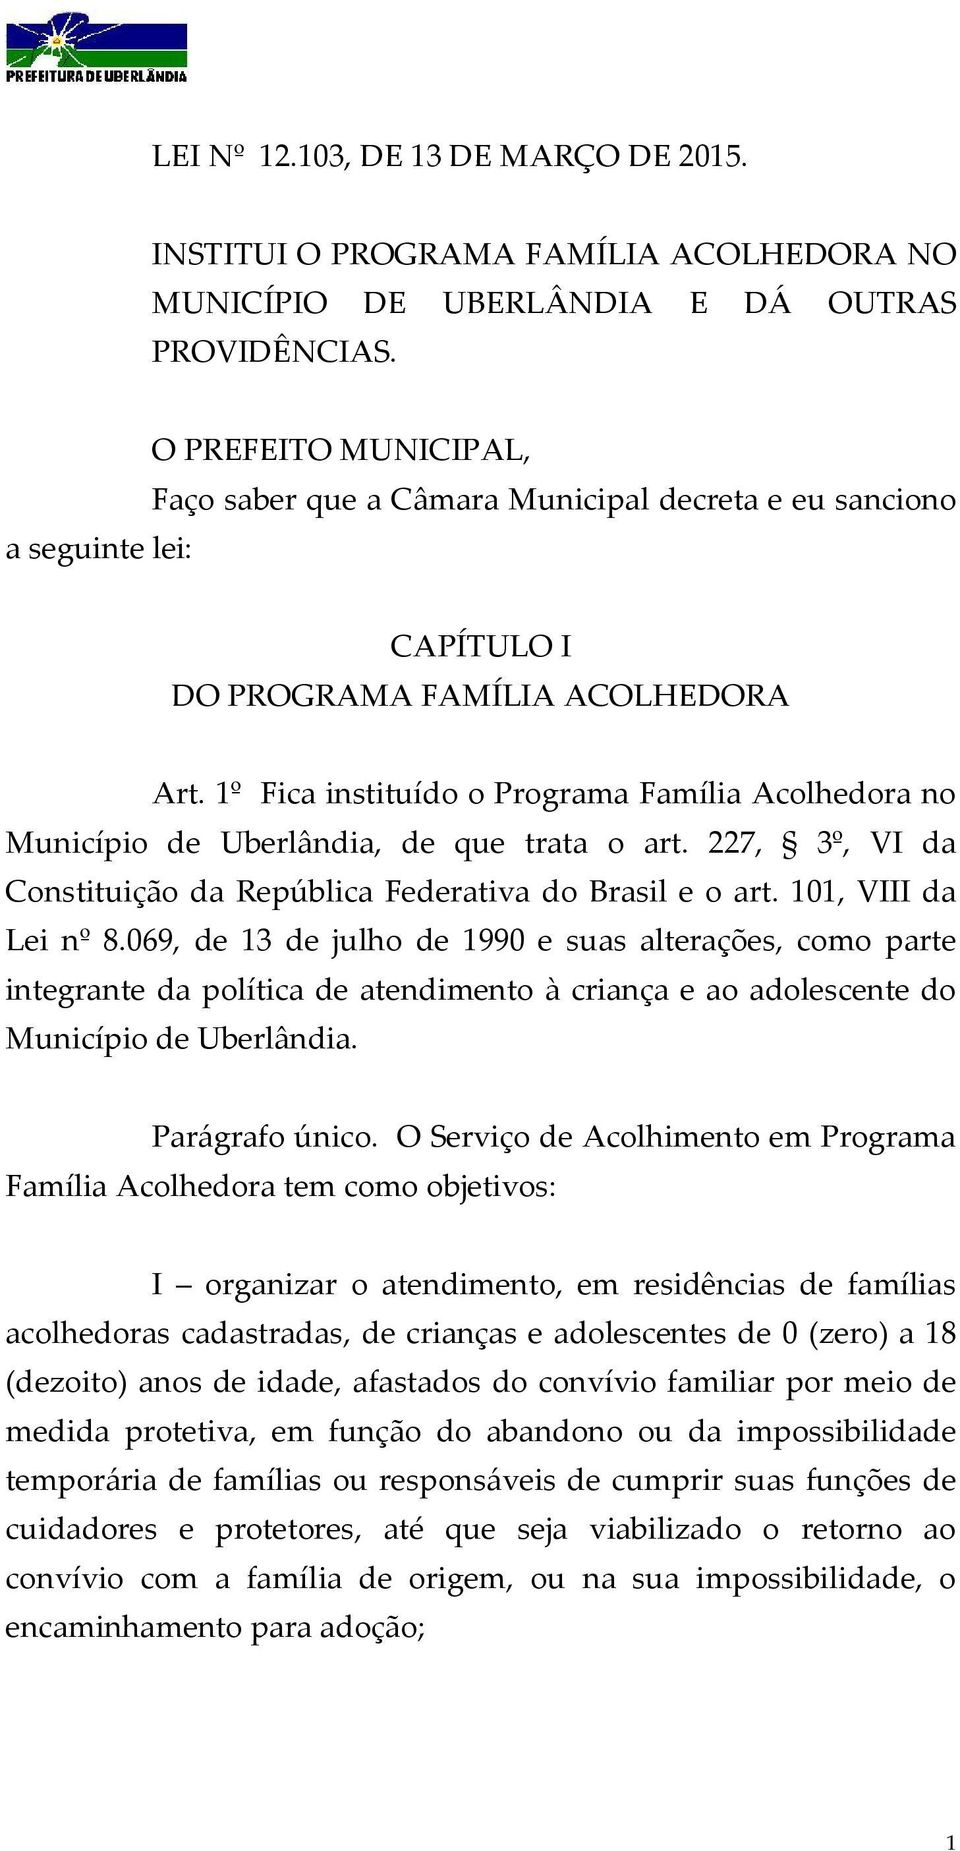 1º Fica instituído o Programa Família Acolhedora no Município de Uberlândia, de que trata o art. 227, 3º, VI da Constituição da República Federativa do Brasil e o art. 101, VIII da Lei nº 8.